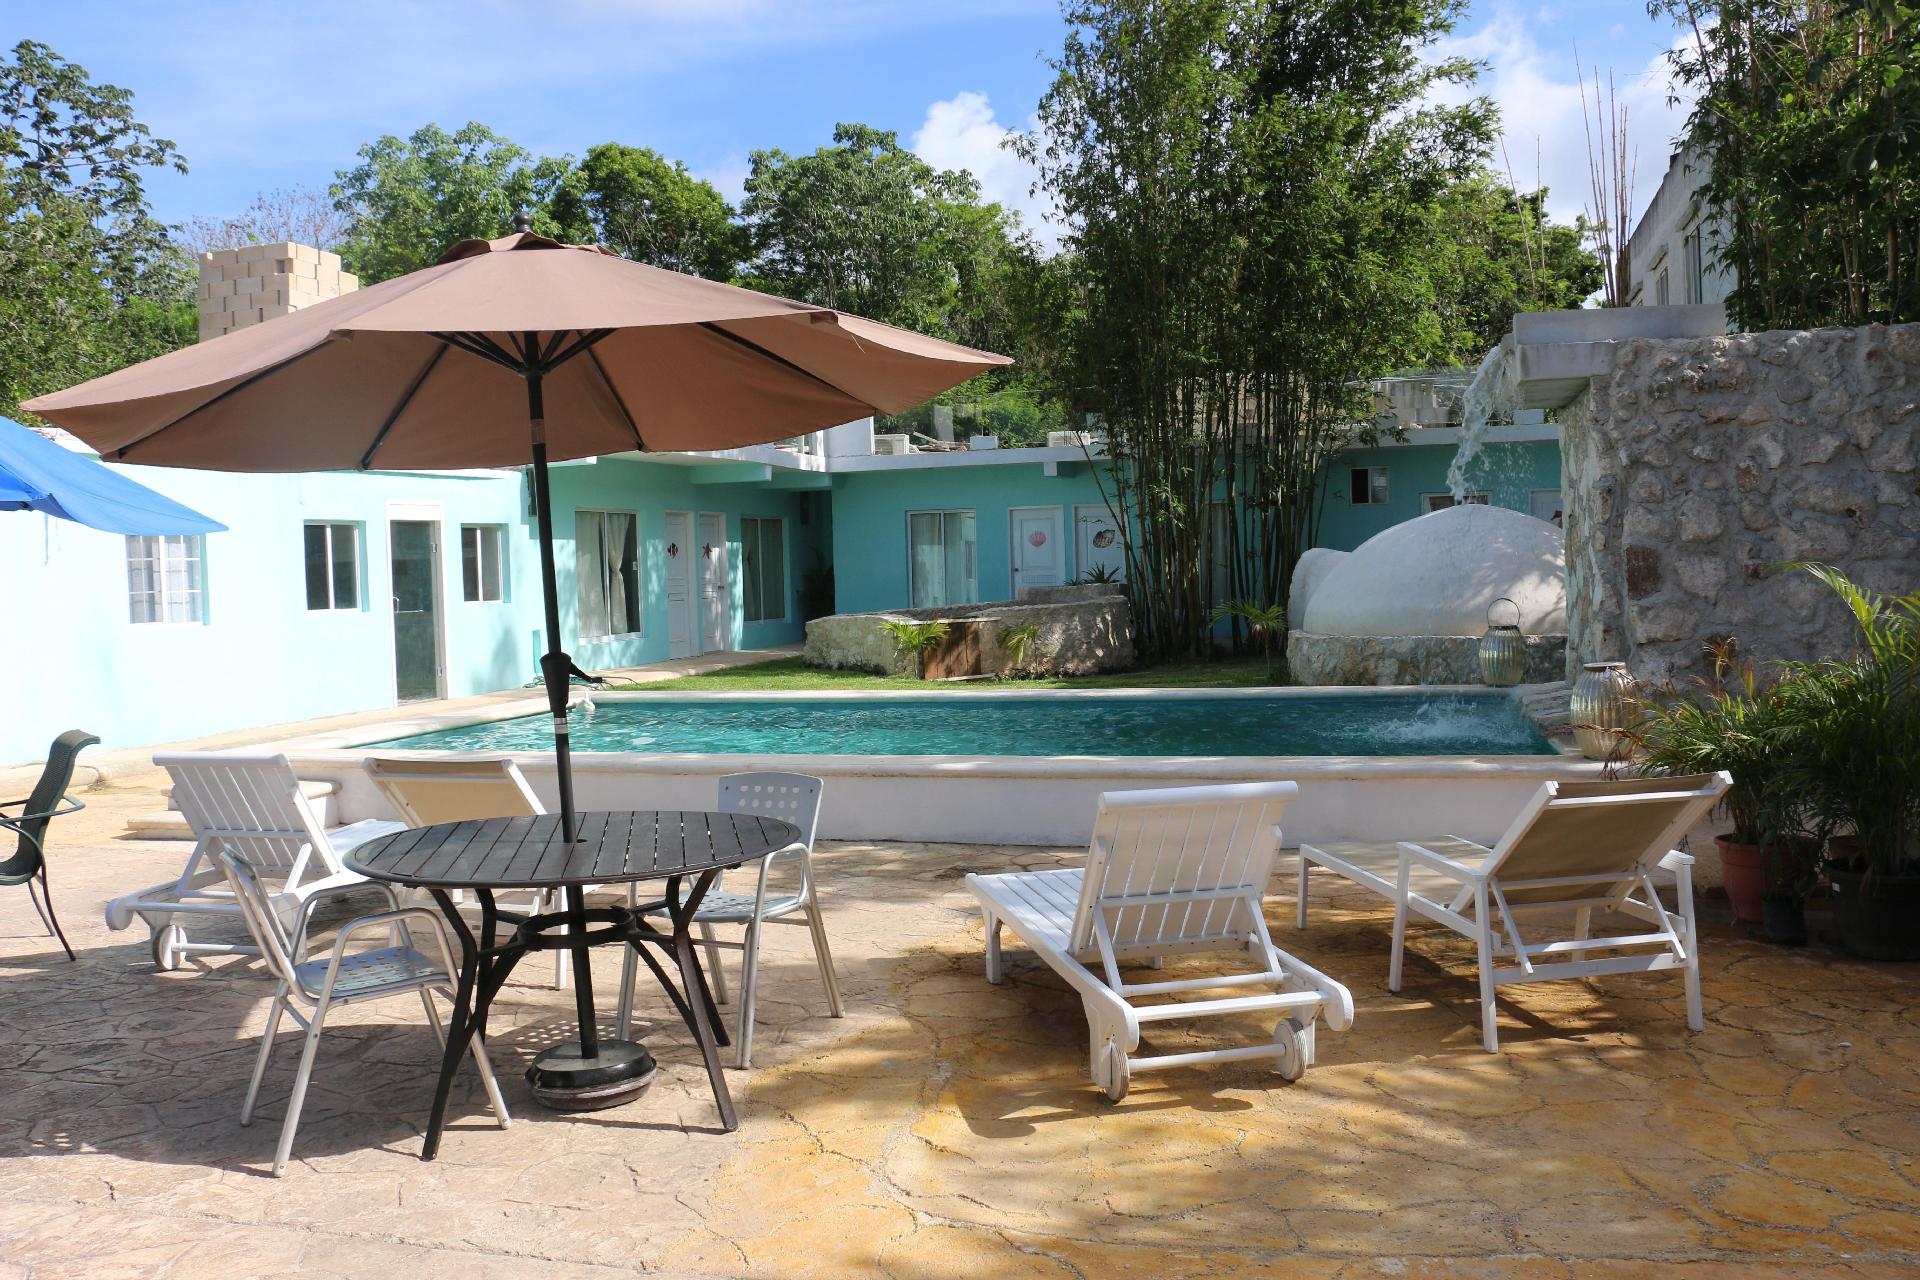 Ferienhaus mit Privatpool für 15 Personen ca. Ferienhaus in Mittelamerika und Karibik